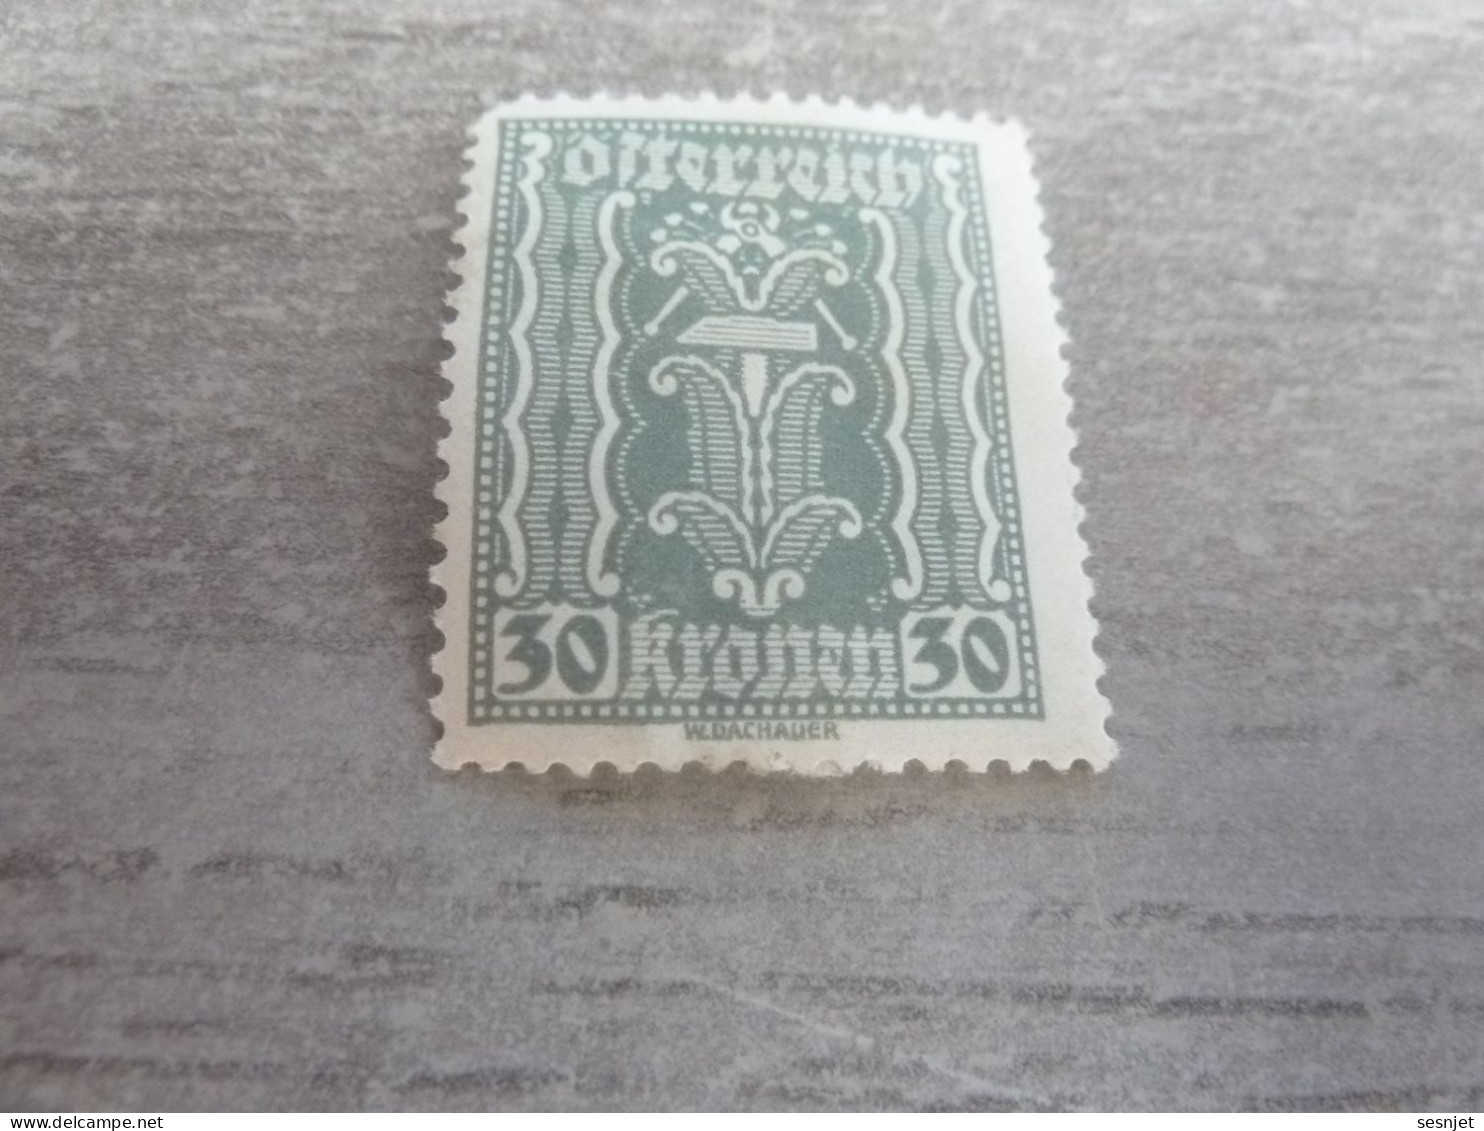 Osterreich - Symbole - Val 30 Kronen - Gris Clair - Neuf Avec Charnière - Année 1918 - - Revenue Stamps